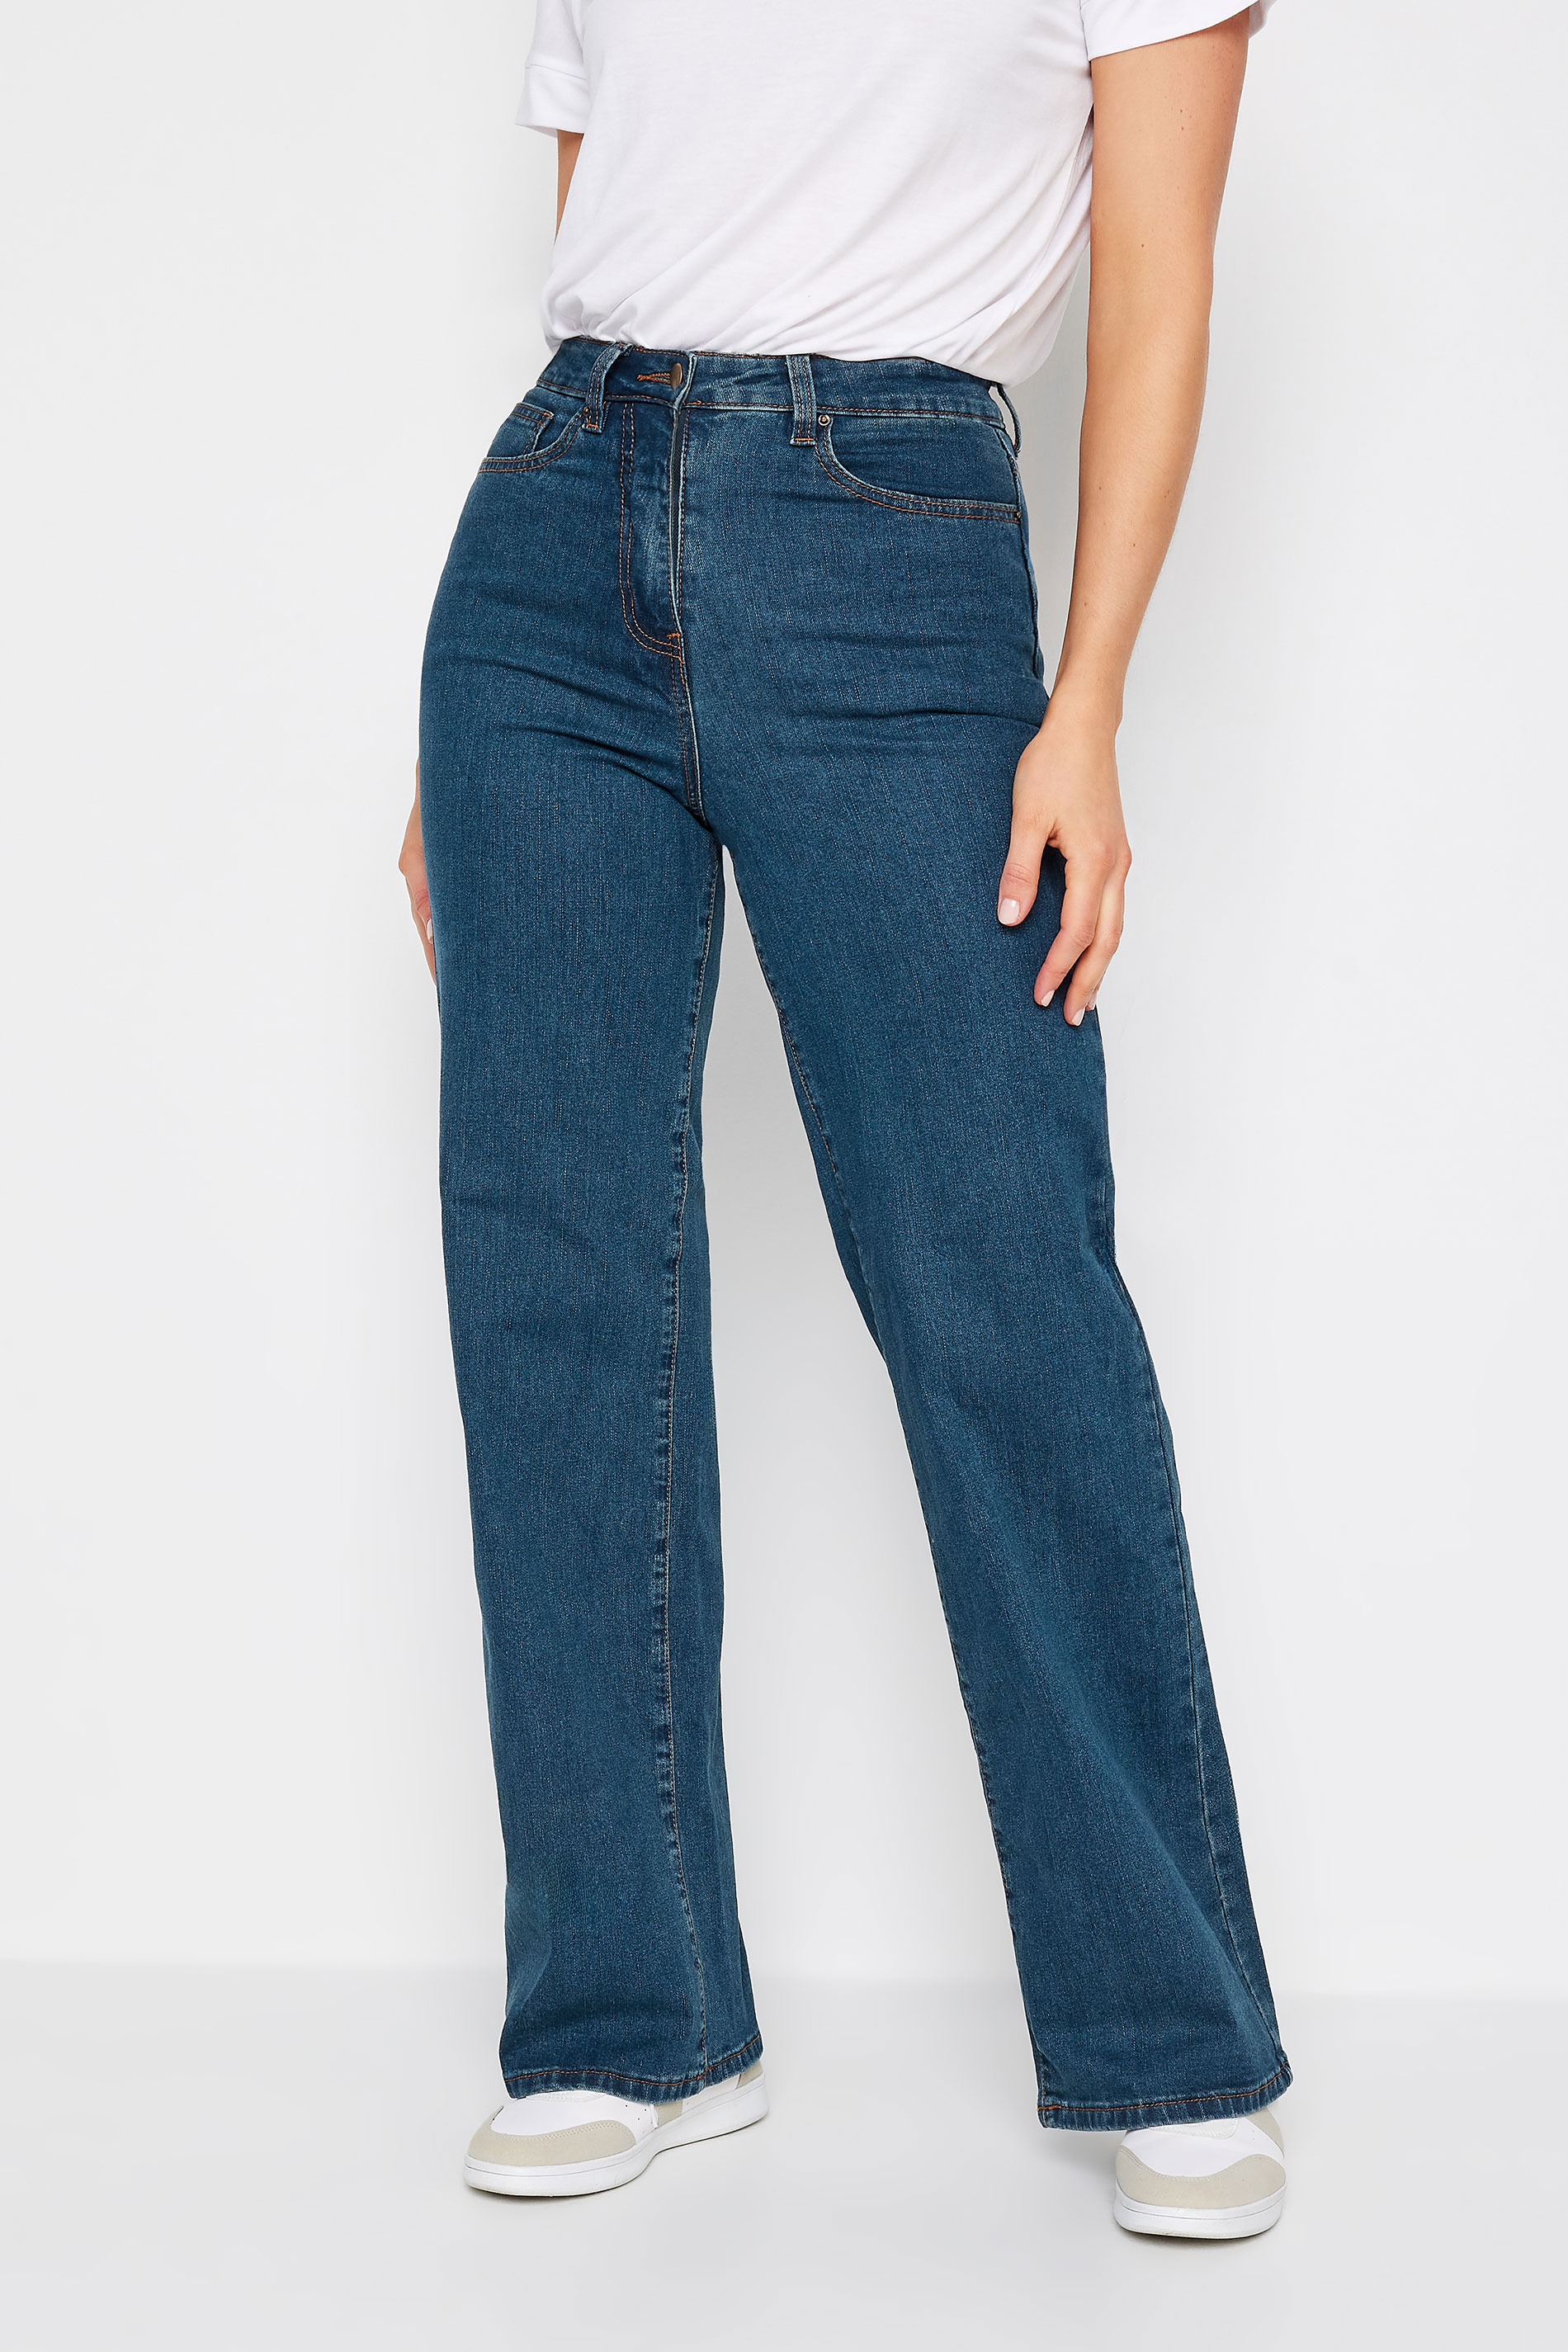 LTS Tall Indigo Blue BEA Wide Leg Jeans | Long Tall Sally 2